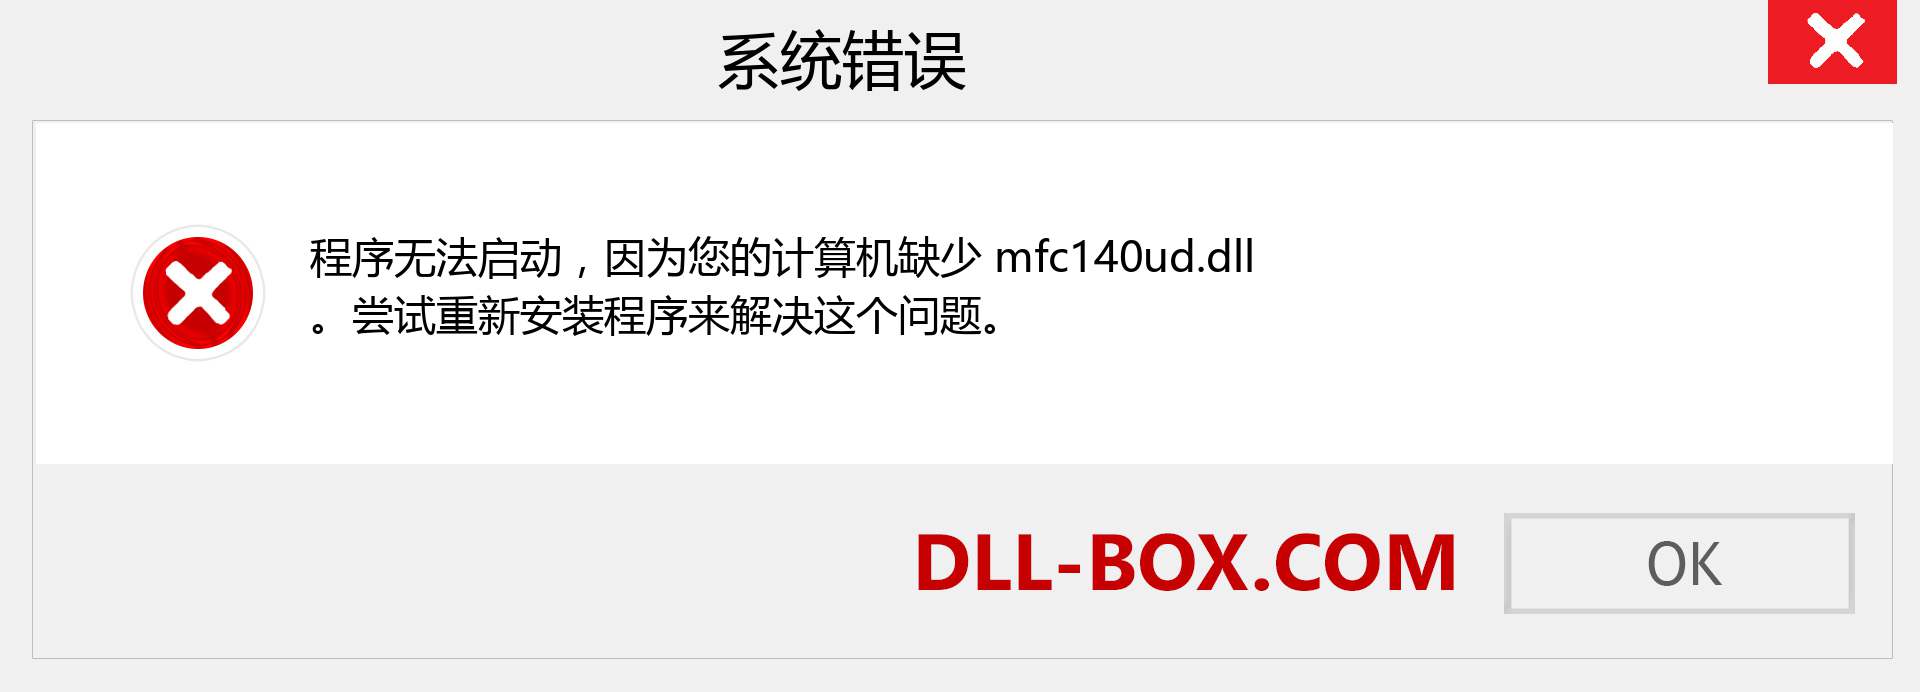 mfc140ud.dll 文件丢失？。 适用于 Windows 7、8、10 的下载 - 修复 Windows、照片、图像上的 mfc140ud dll 丢失错误